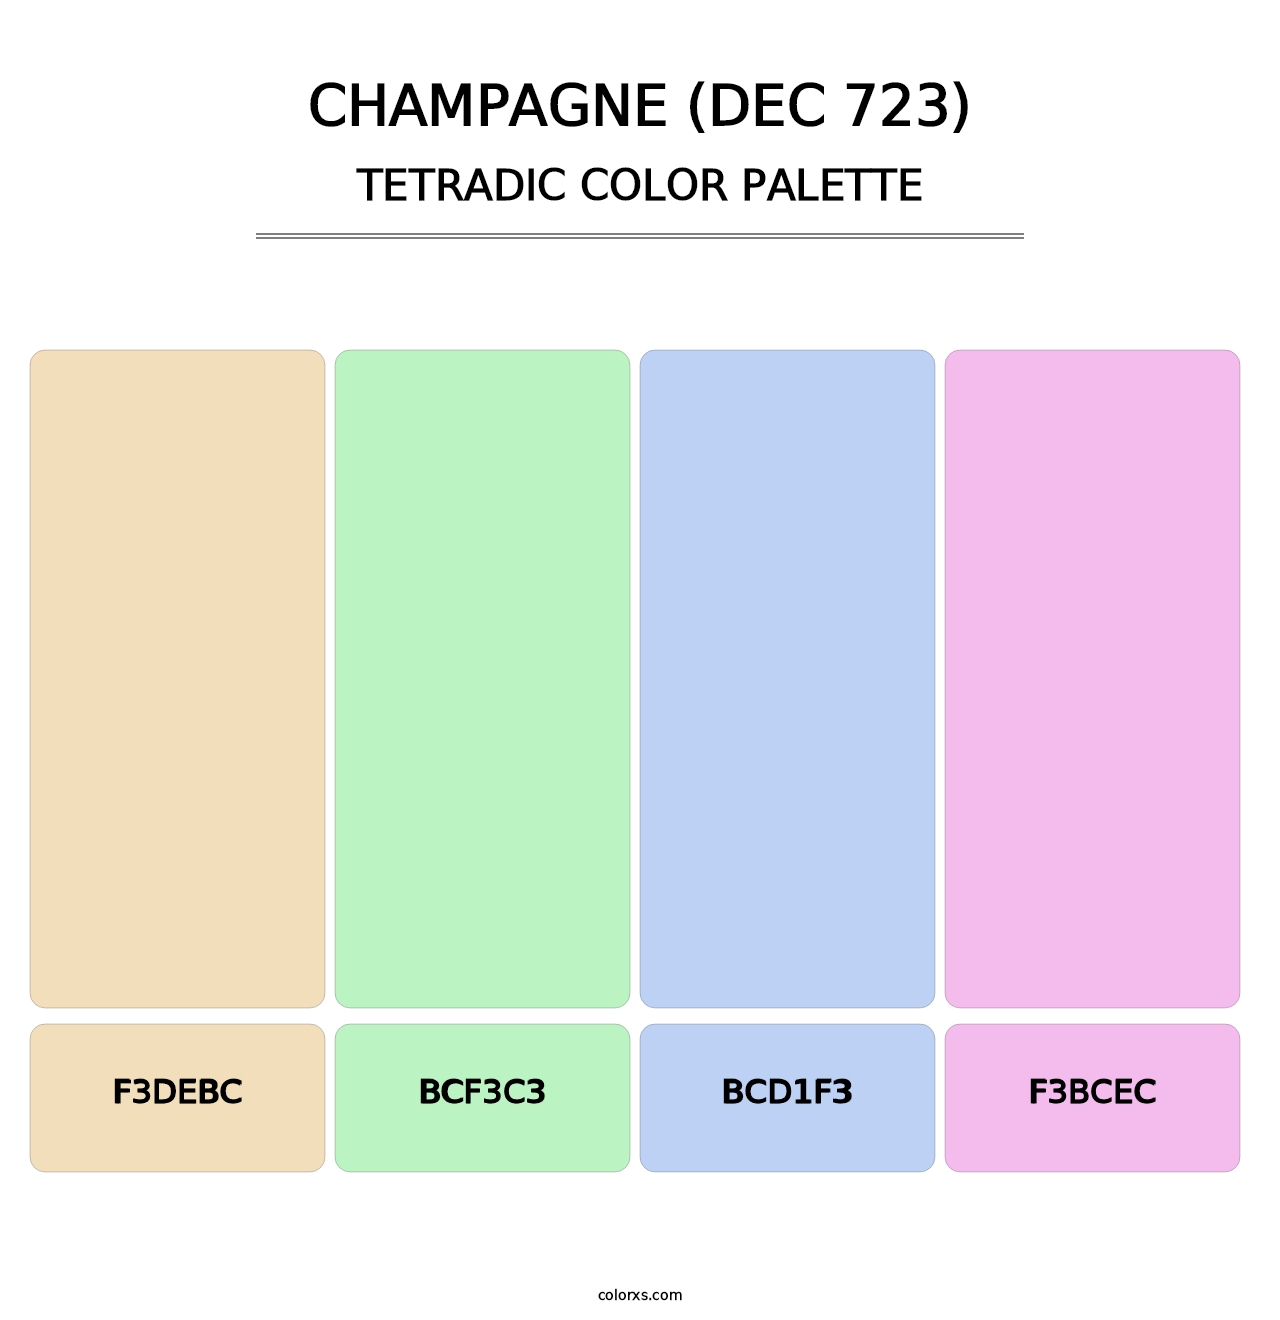 Champagne (DEC 723) - Tetradic Color Palette